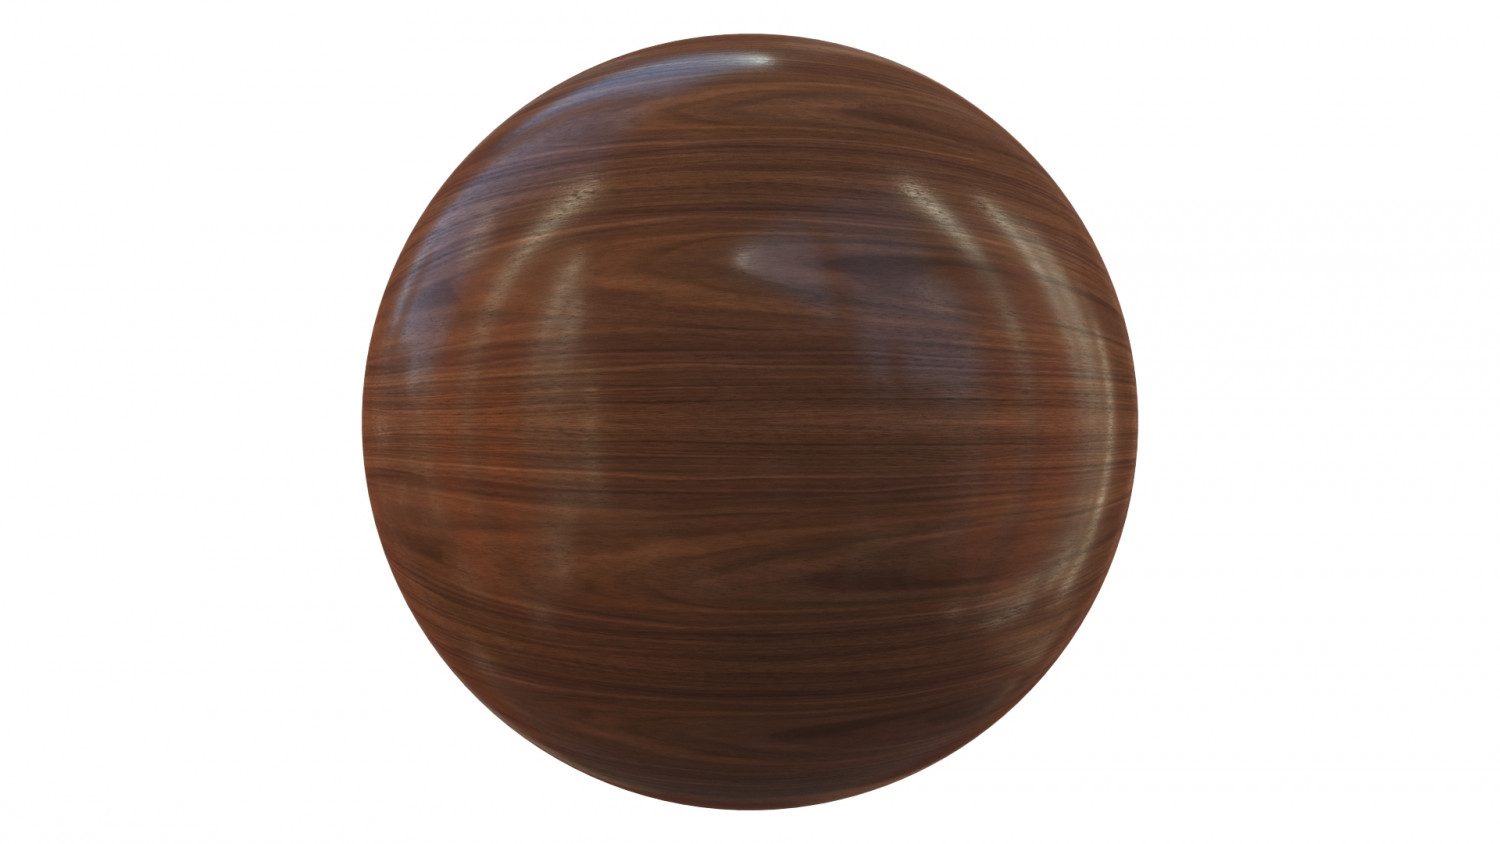 Shiny walnut veneer texture